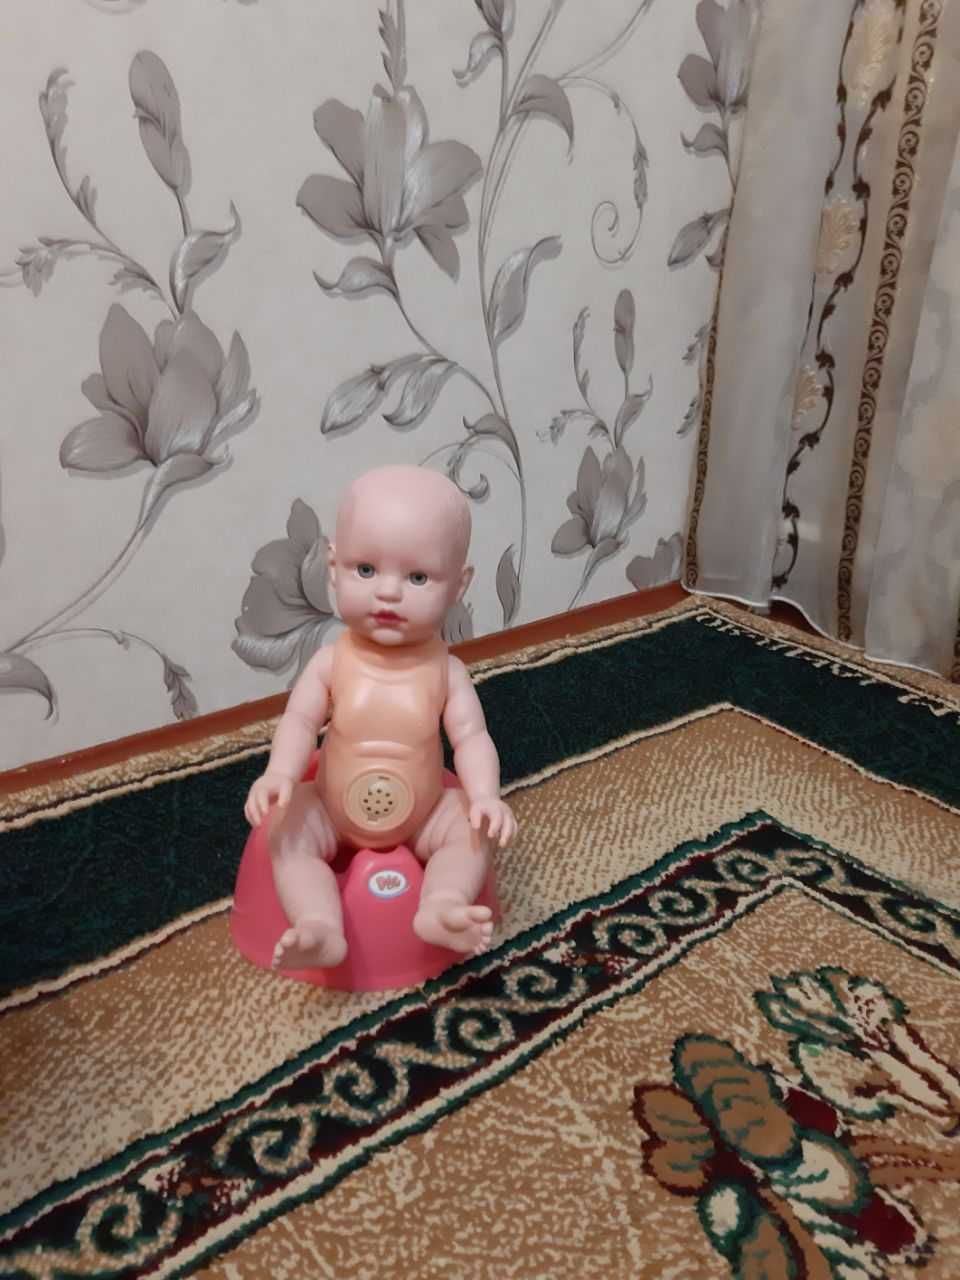 продается кукла Бебби бон